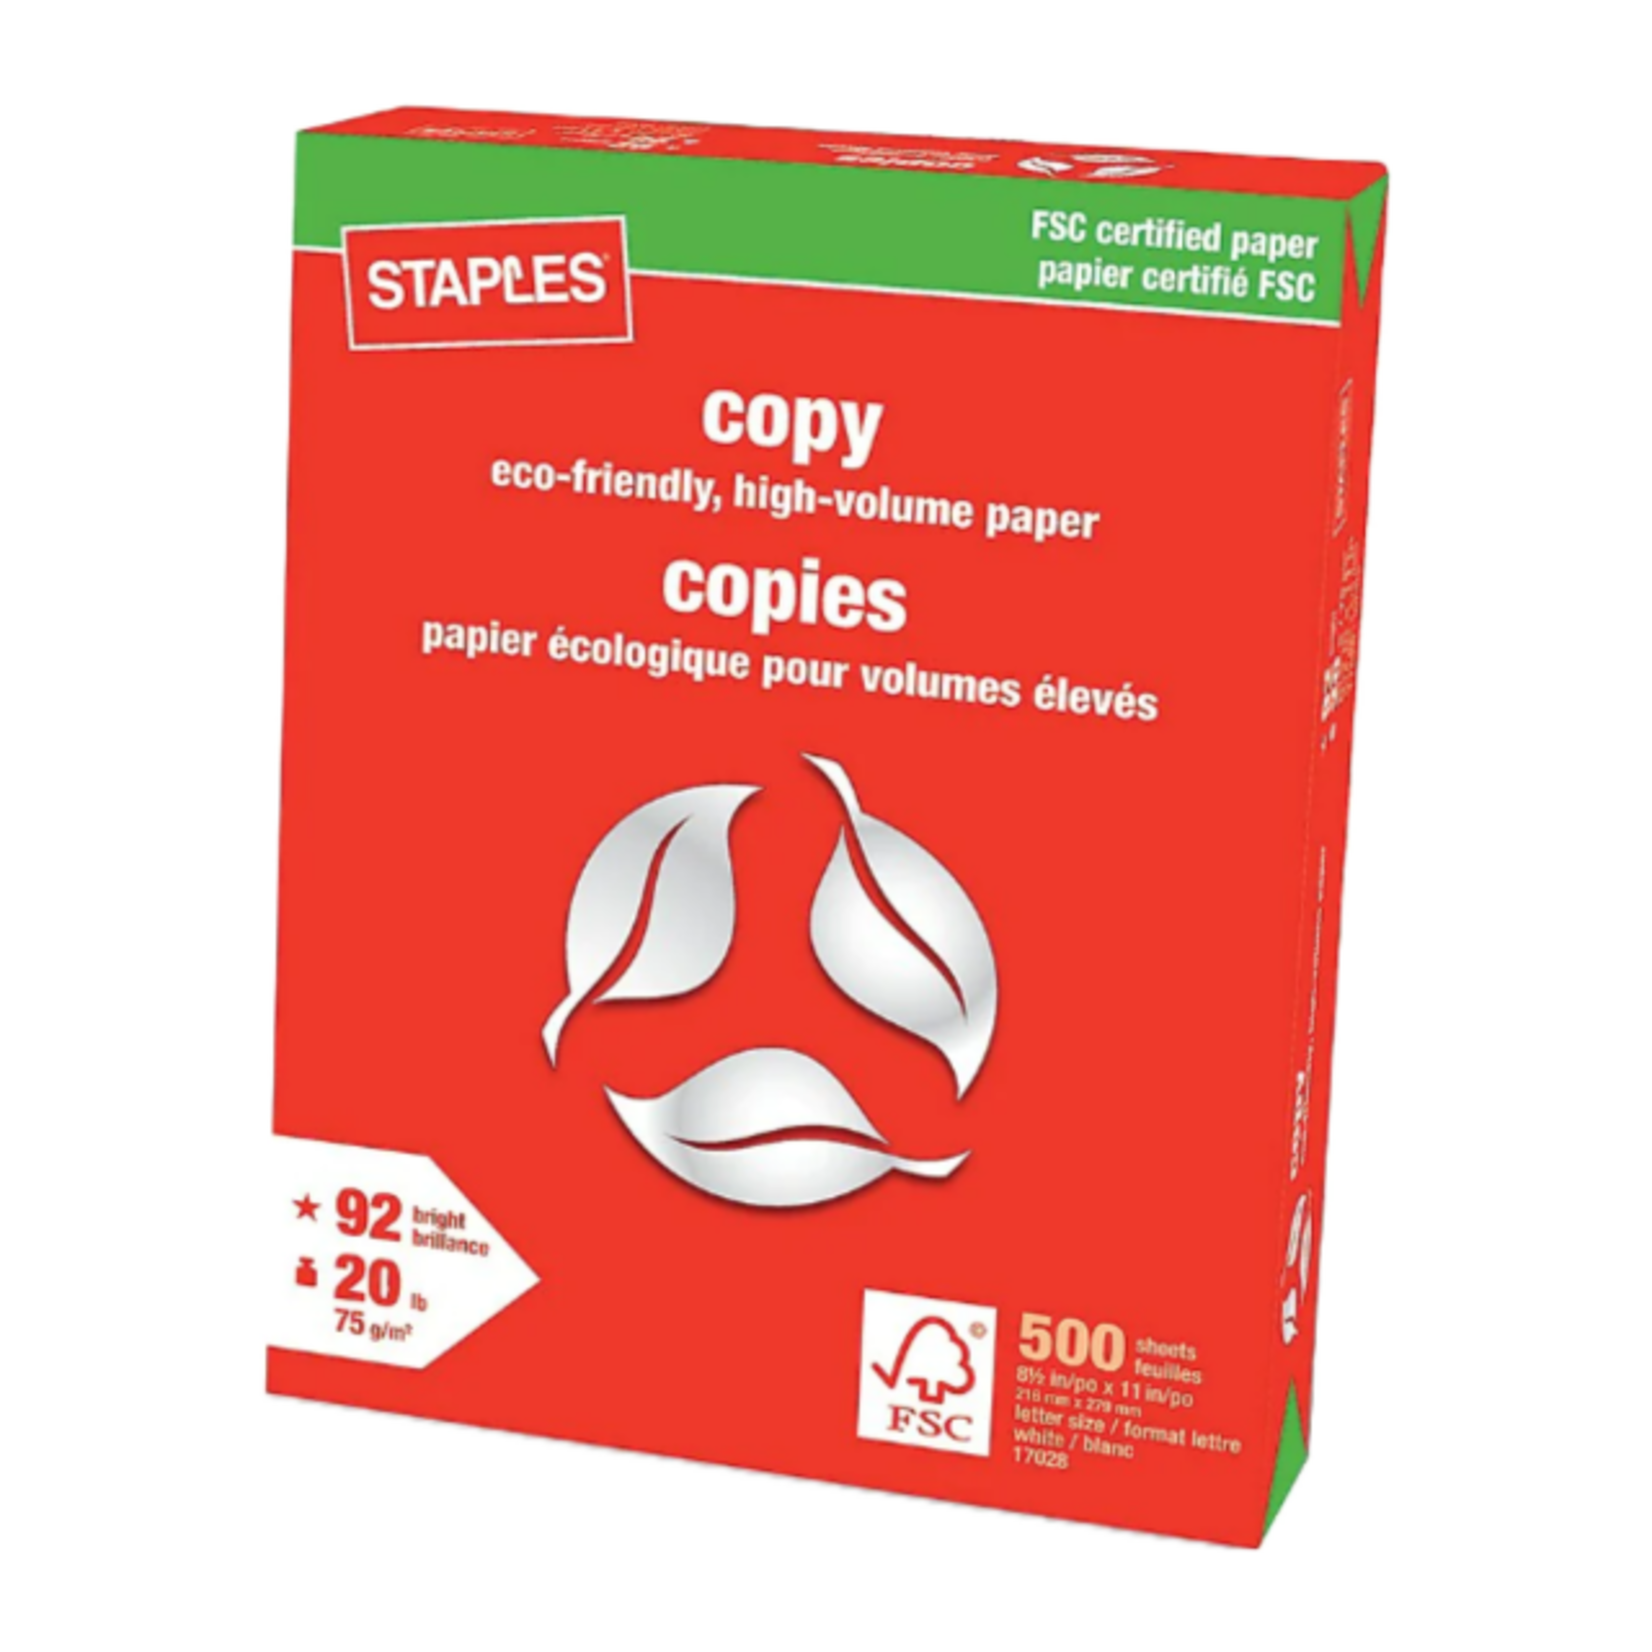 staples-fsc-certified-copy-paper-500-sheets-unb-saint-john-campus-store